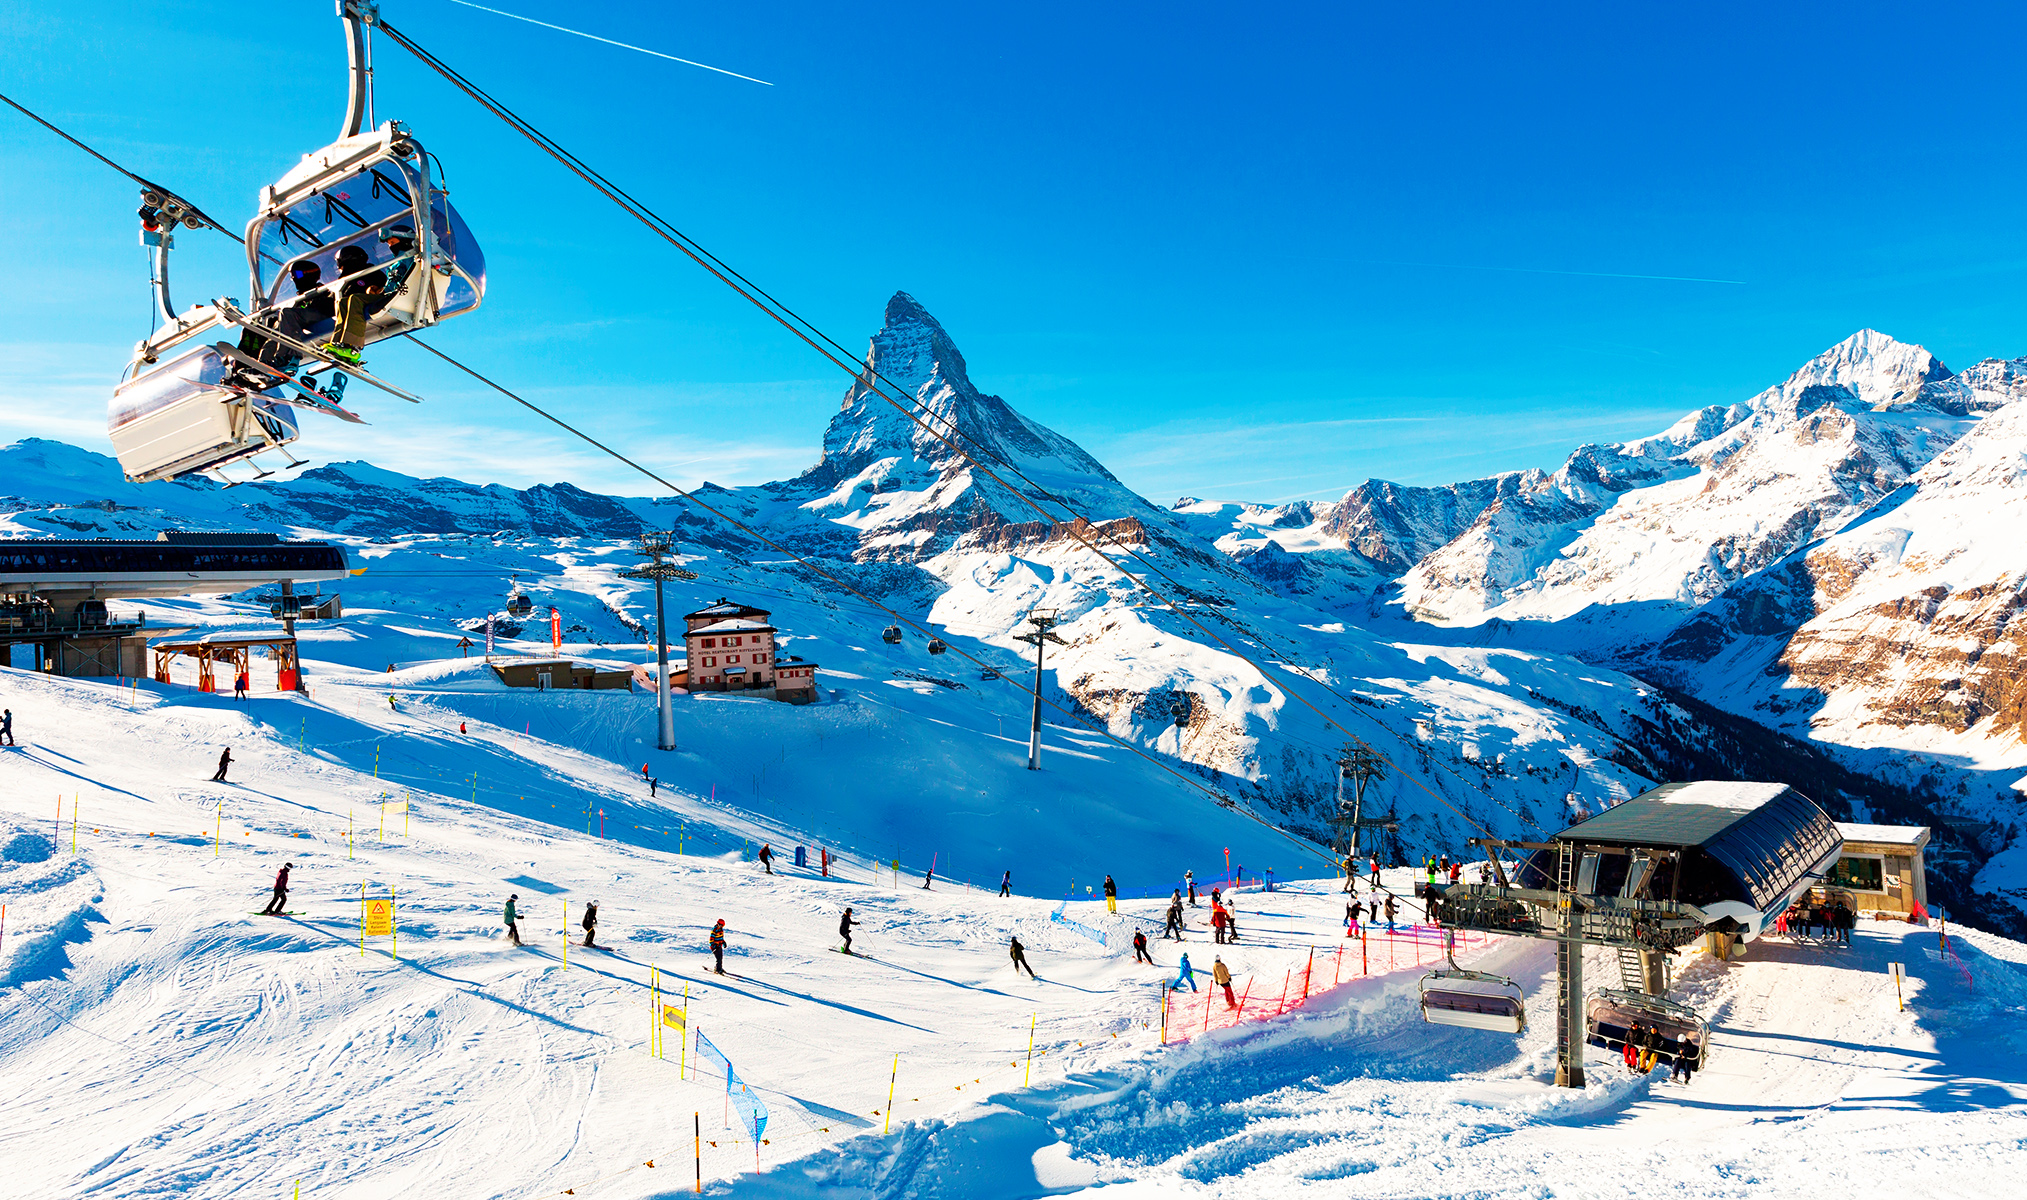 6 горнолыжных курортов. Церматт Швейцария горнолыжка. Швейцария Альпы горнолыжные курорты. Давос климатический высокогорный курорт Швейцарии. Церматт горнолыжный курорт скипасс.